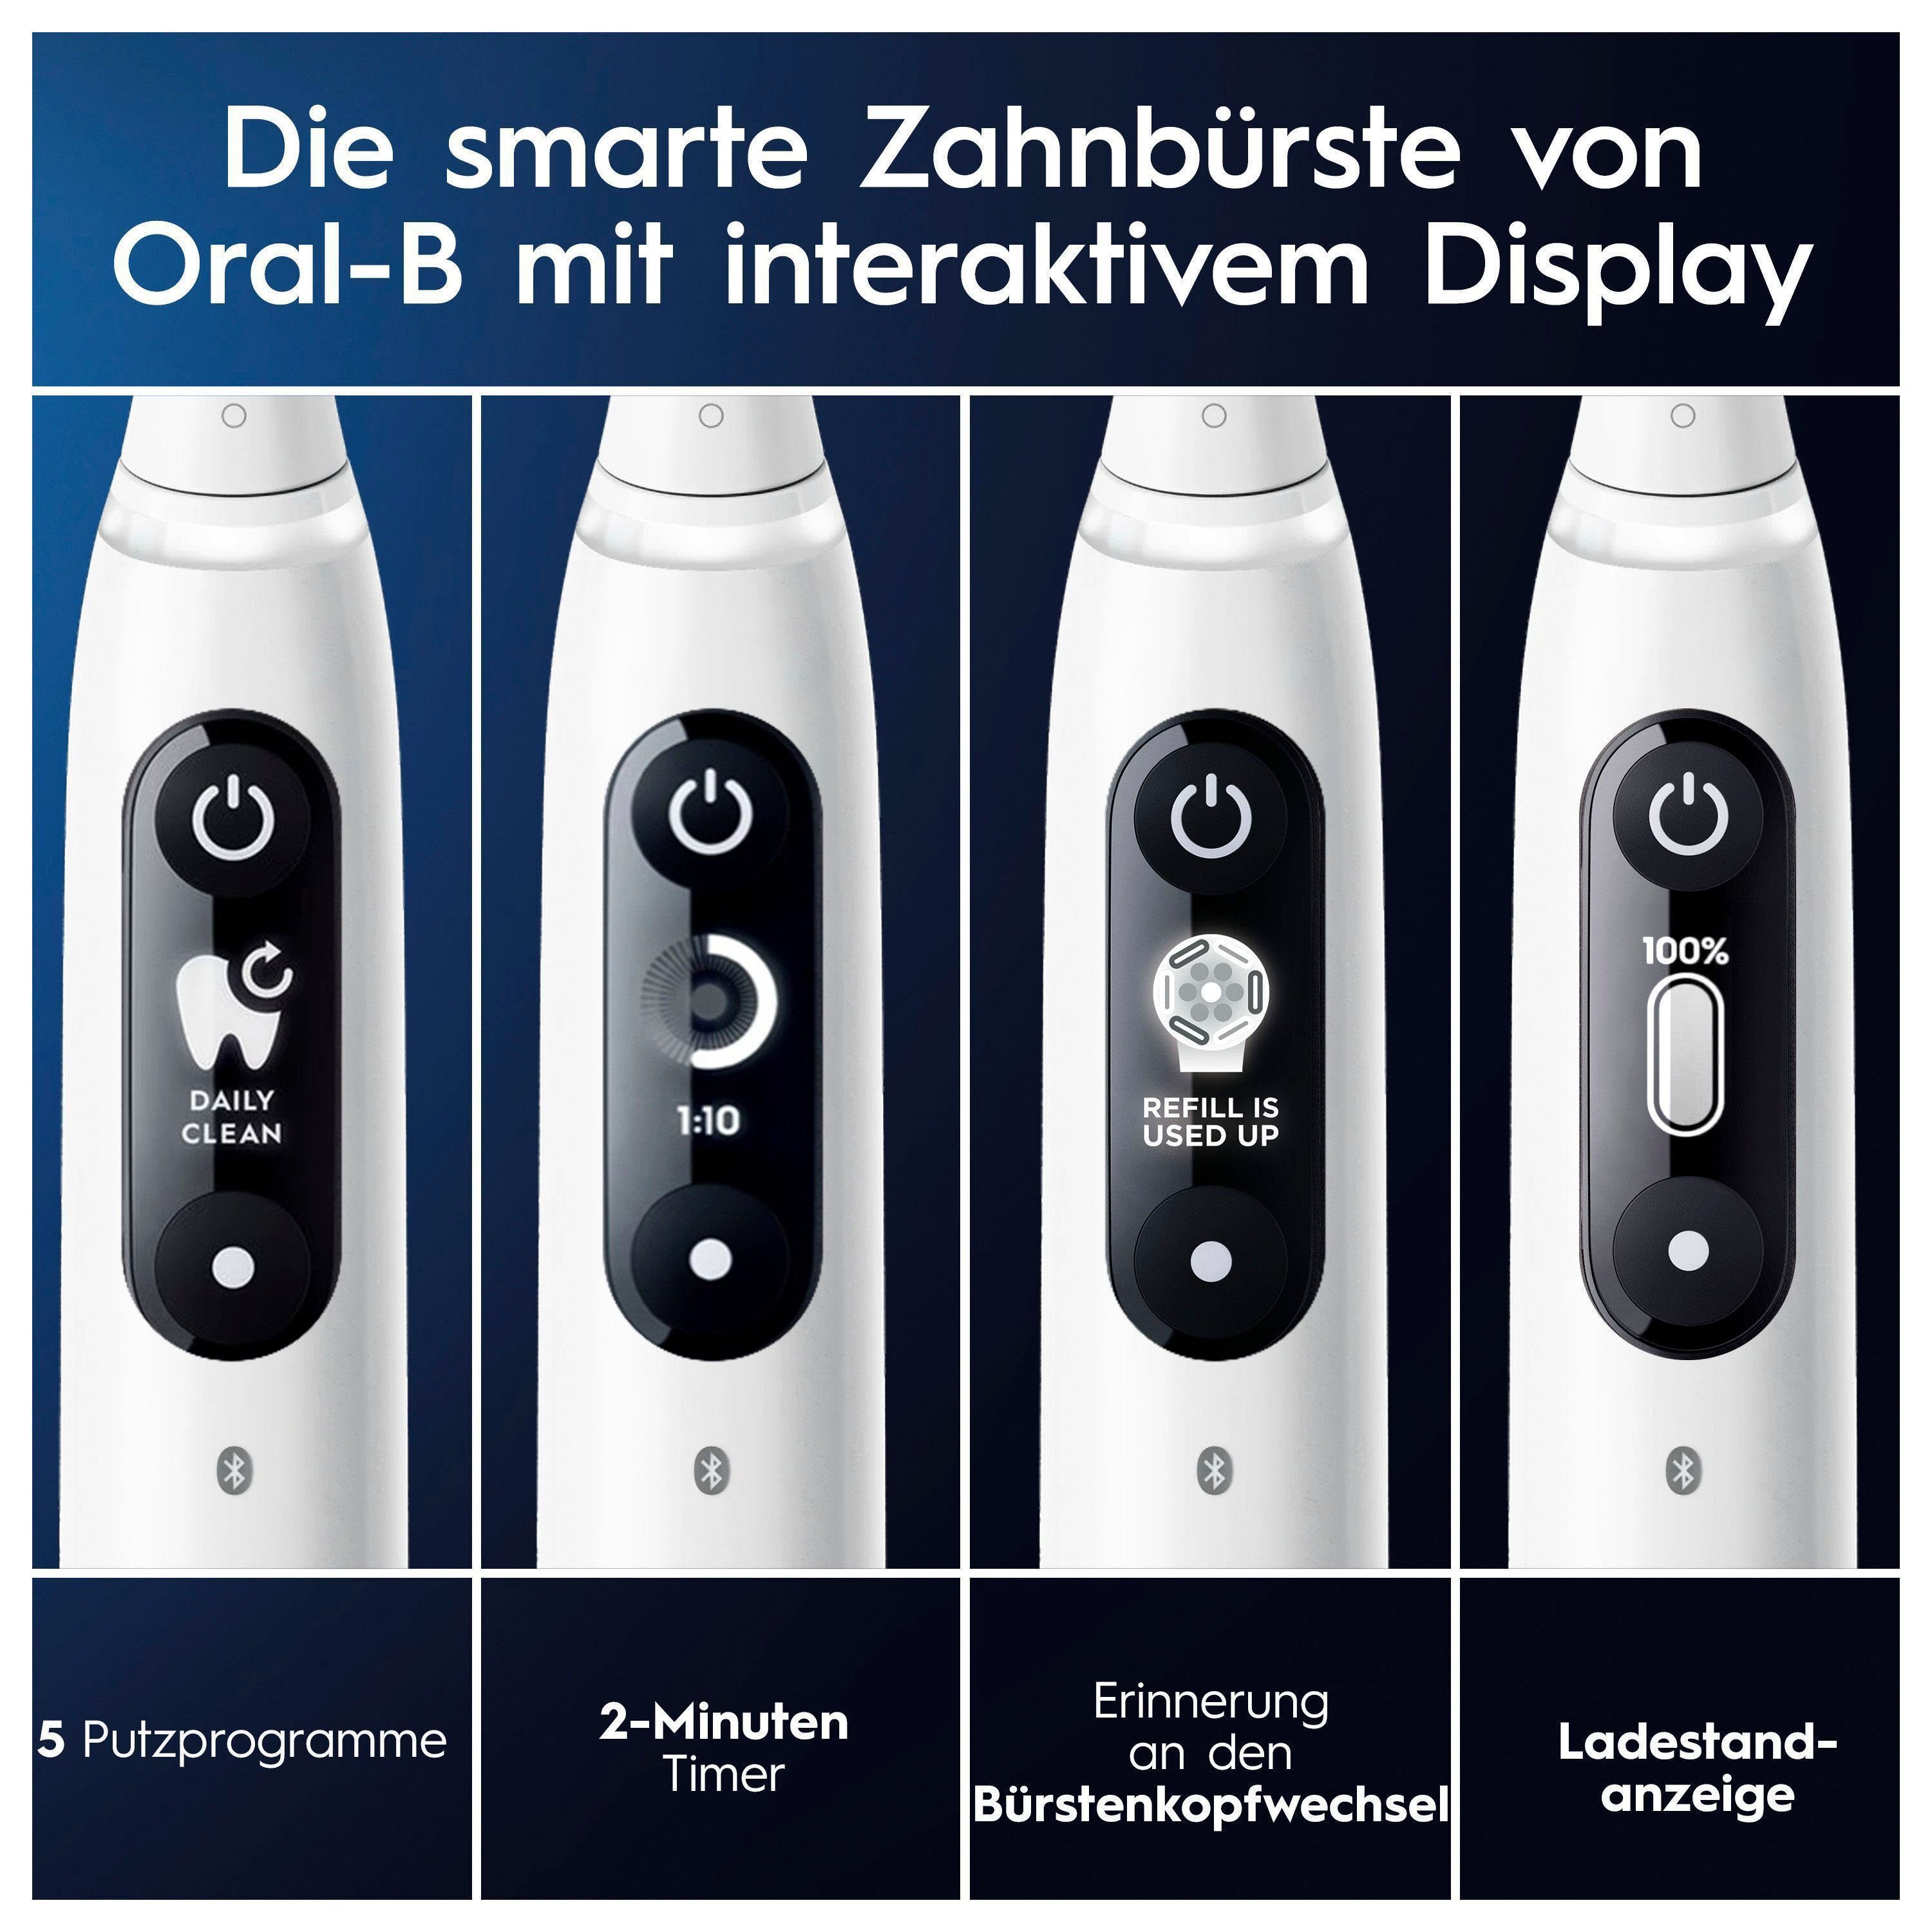 Oral-B mit Display, Elektrische 2 white alabaster Putzmodi, 5 Magnet-Technologie, Zahnbürste 7, Reiseetui St., Aufsteckbürsten: iO